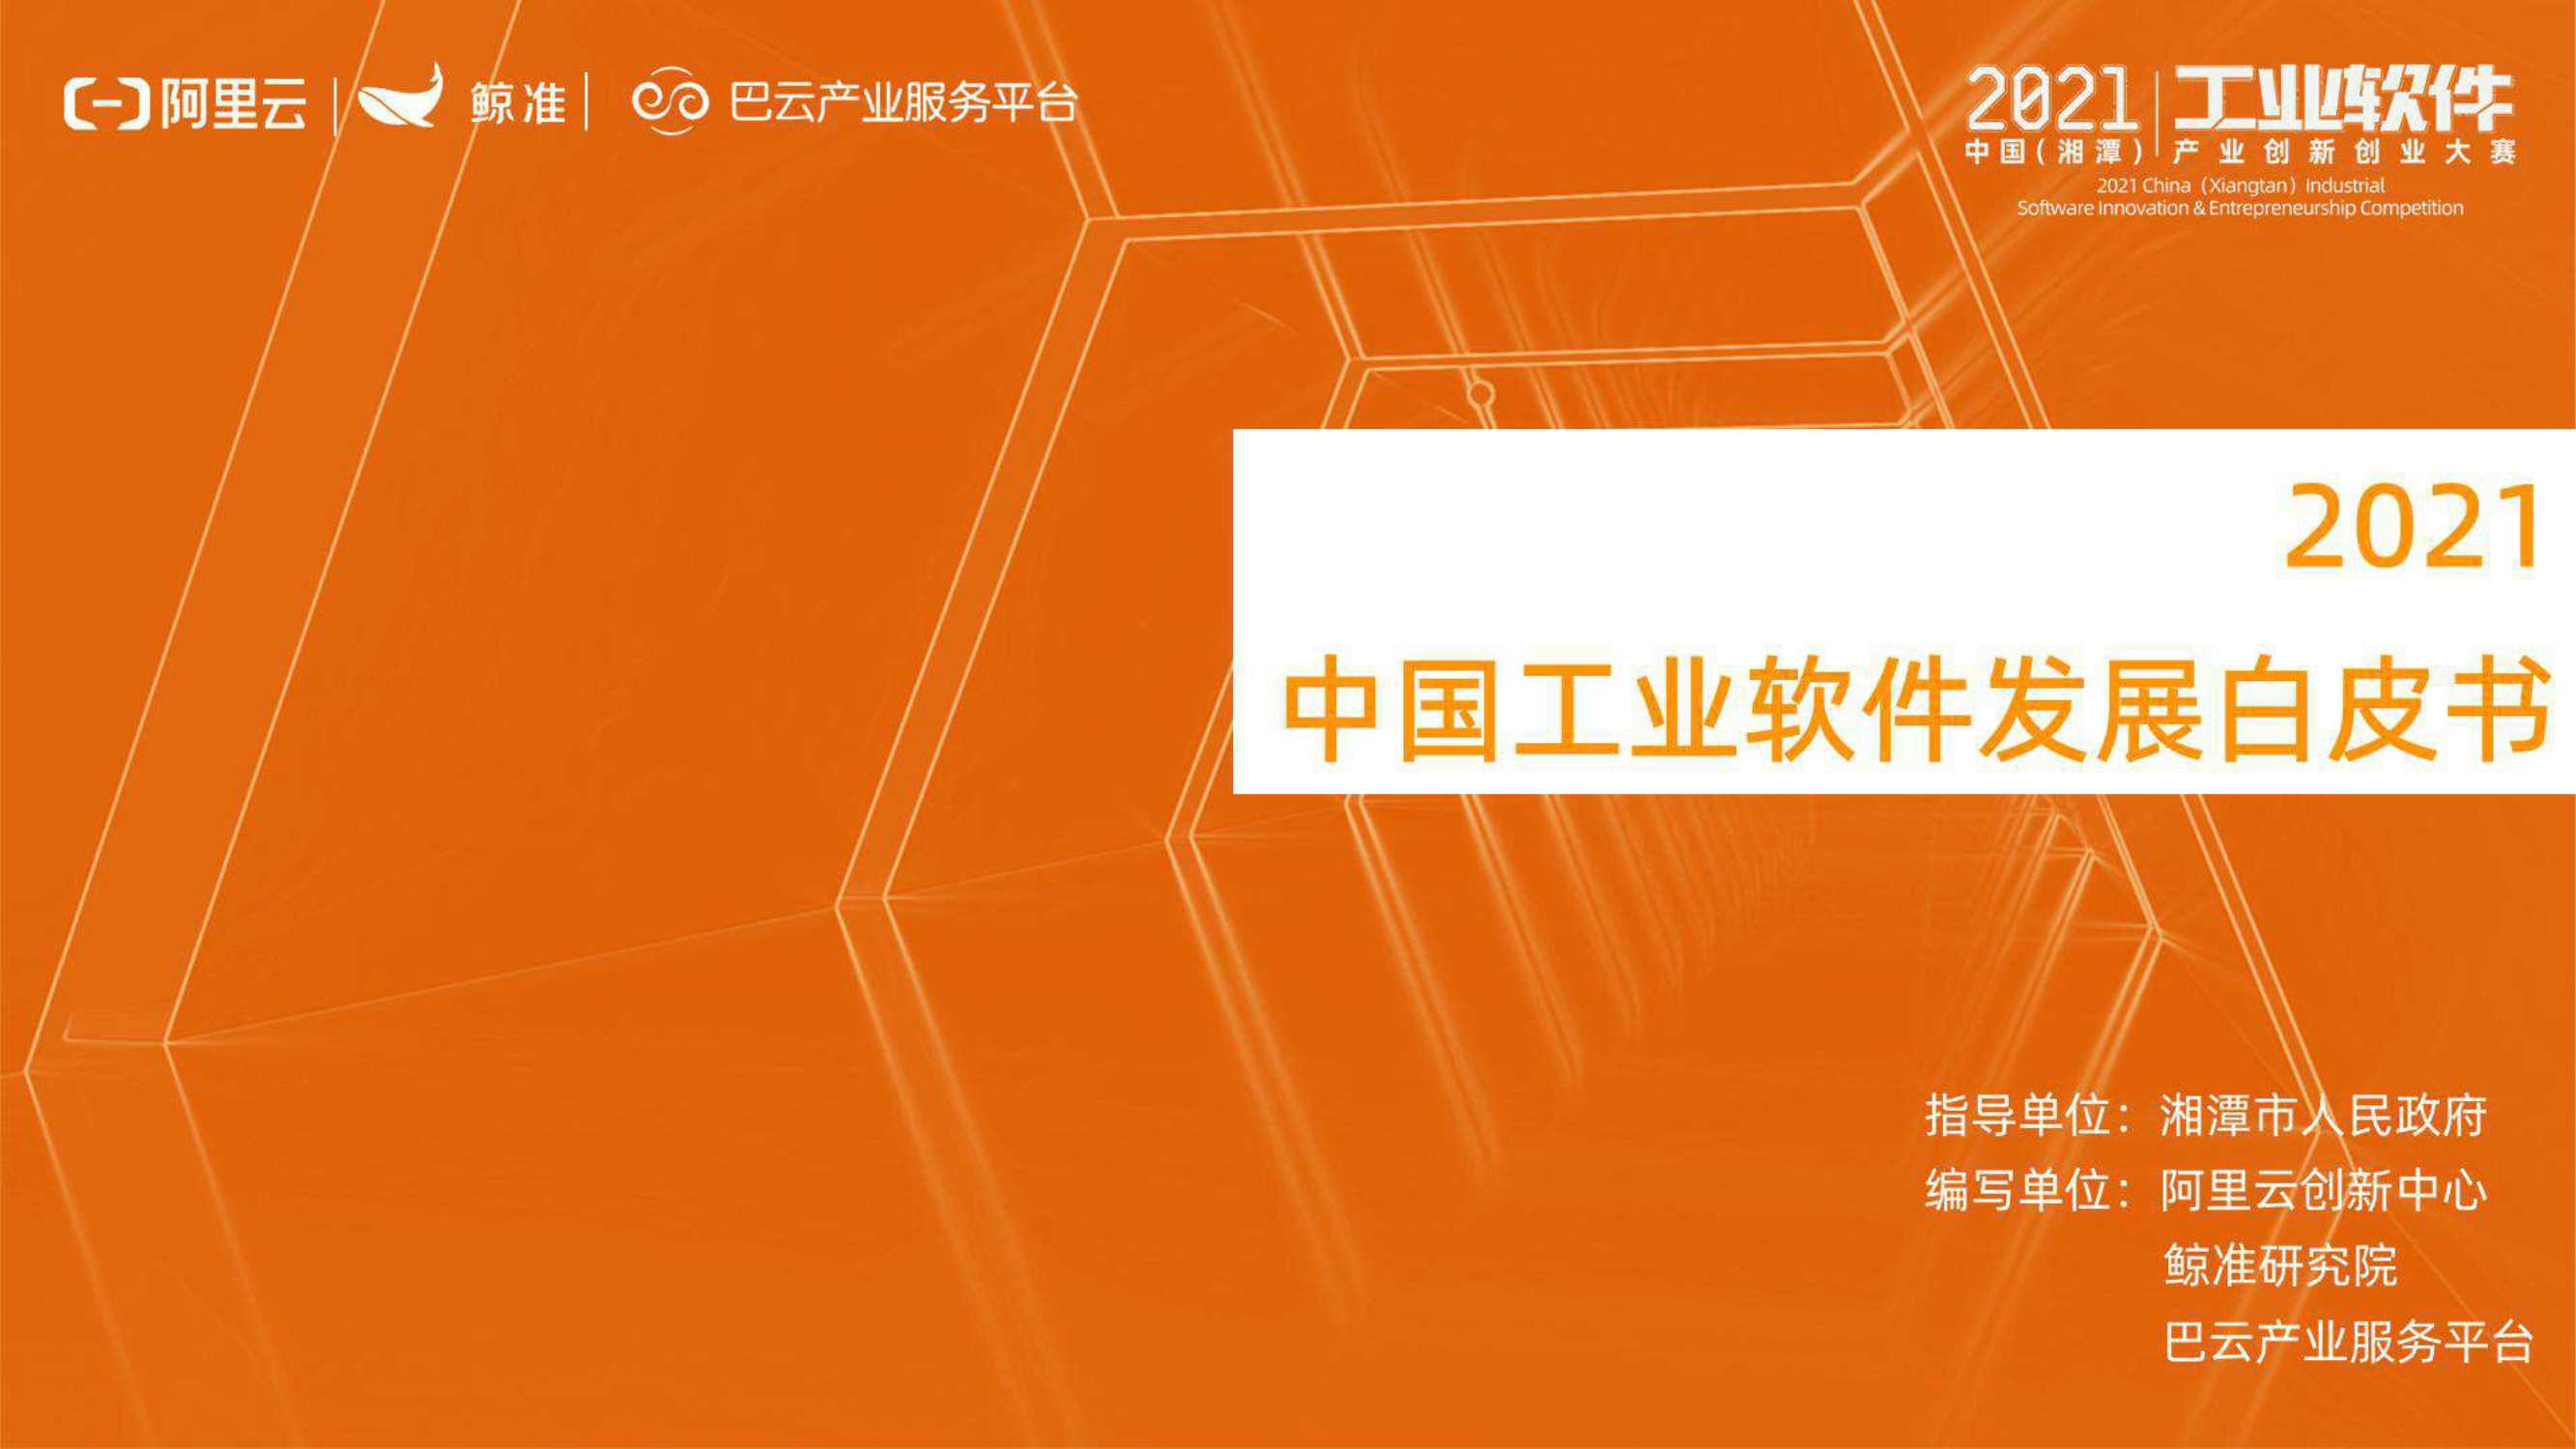 阿里云-2021中国工业软件发展白皮书-2021.10-45页